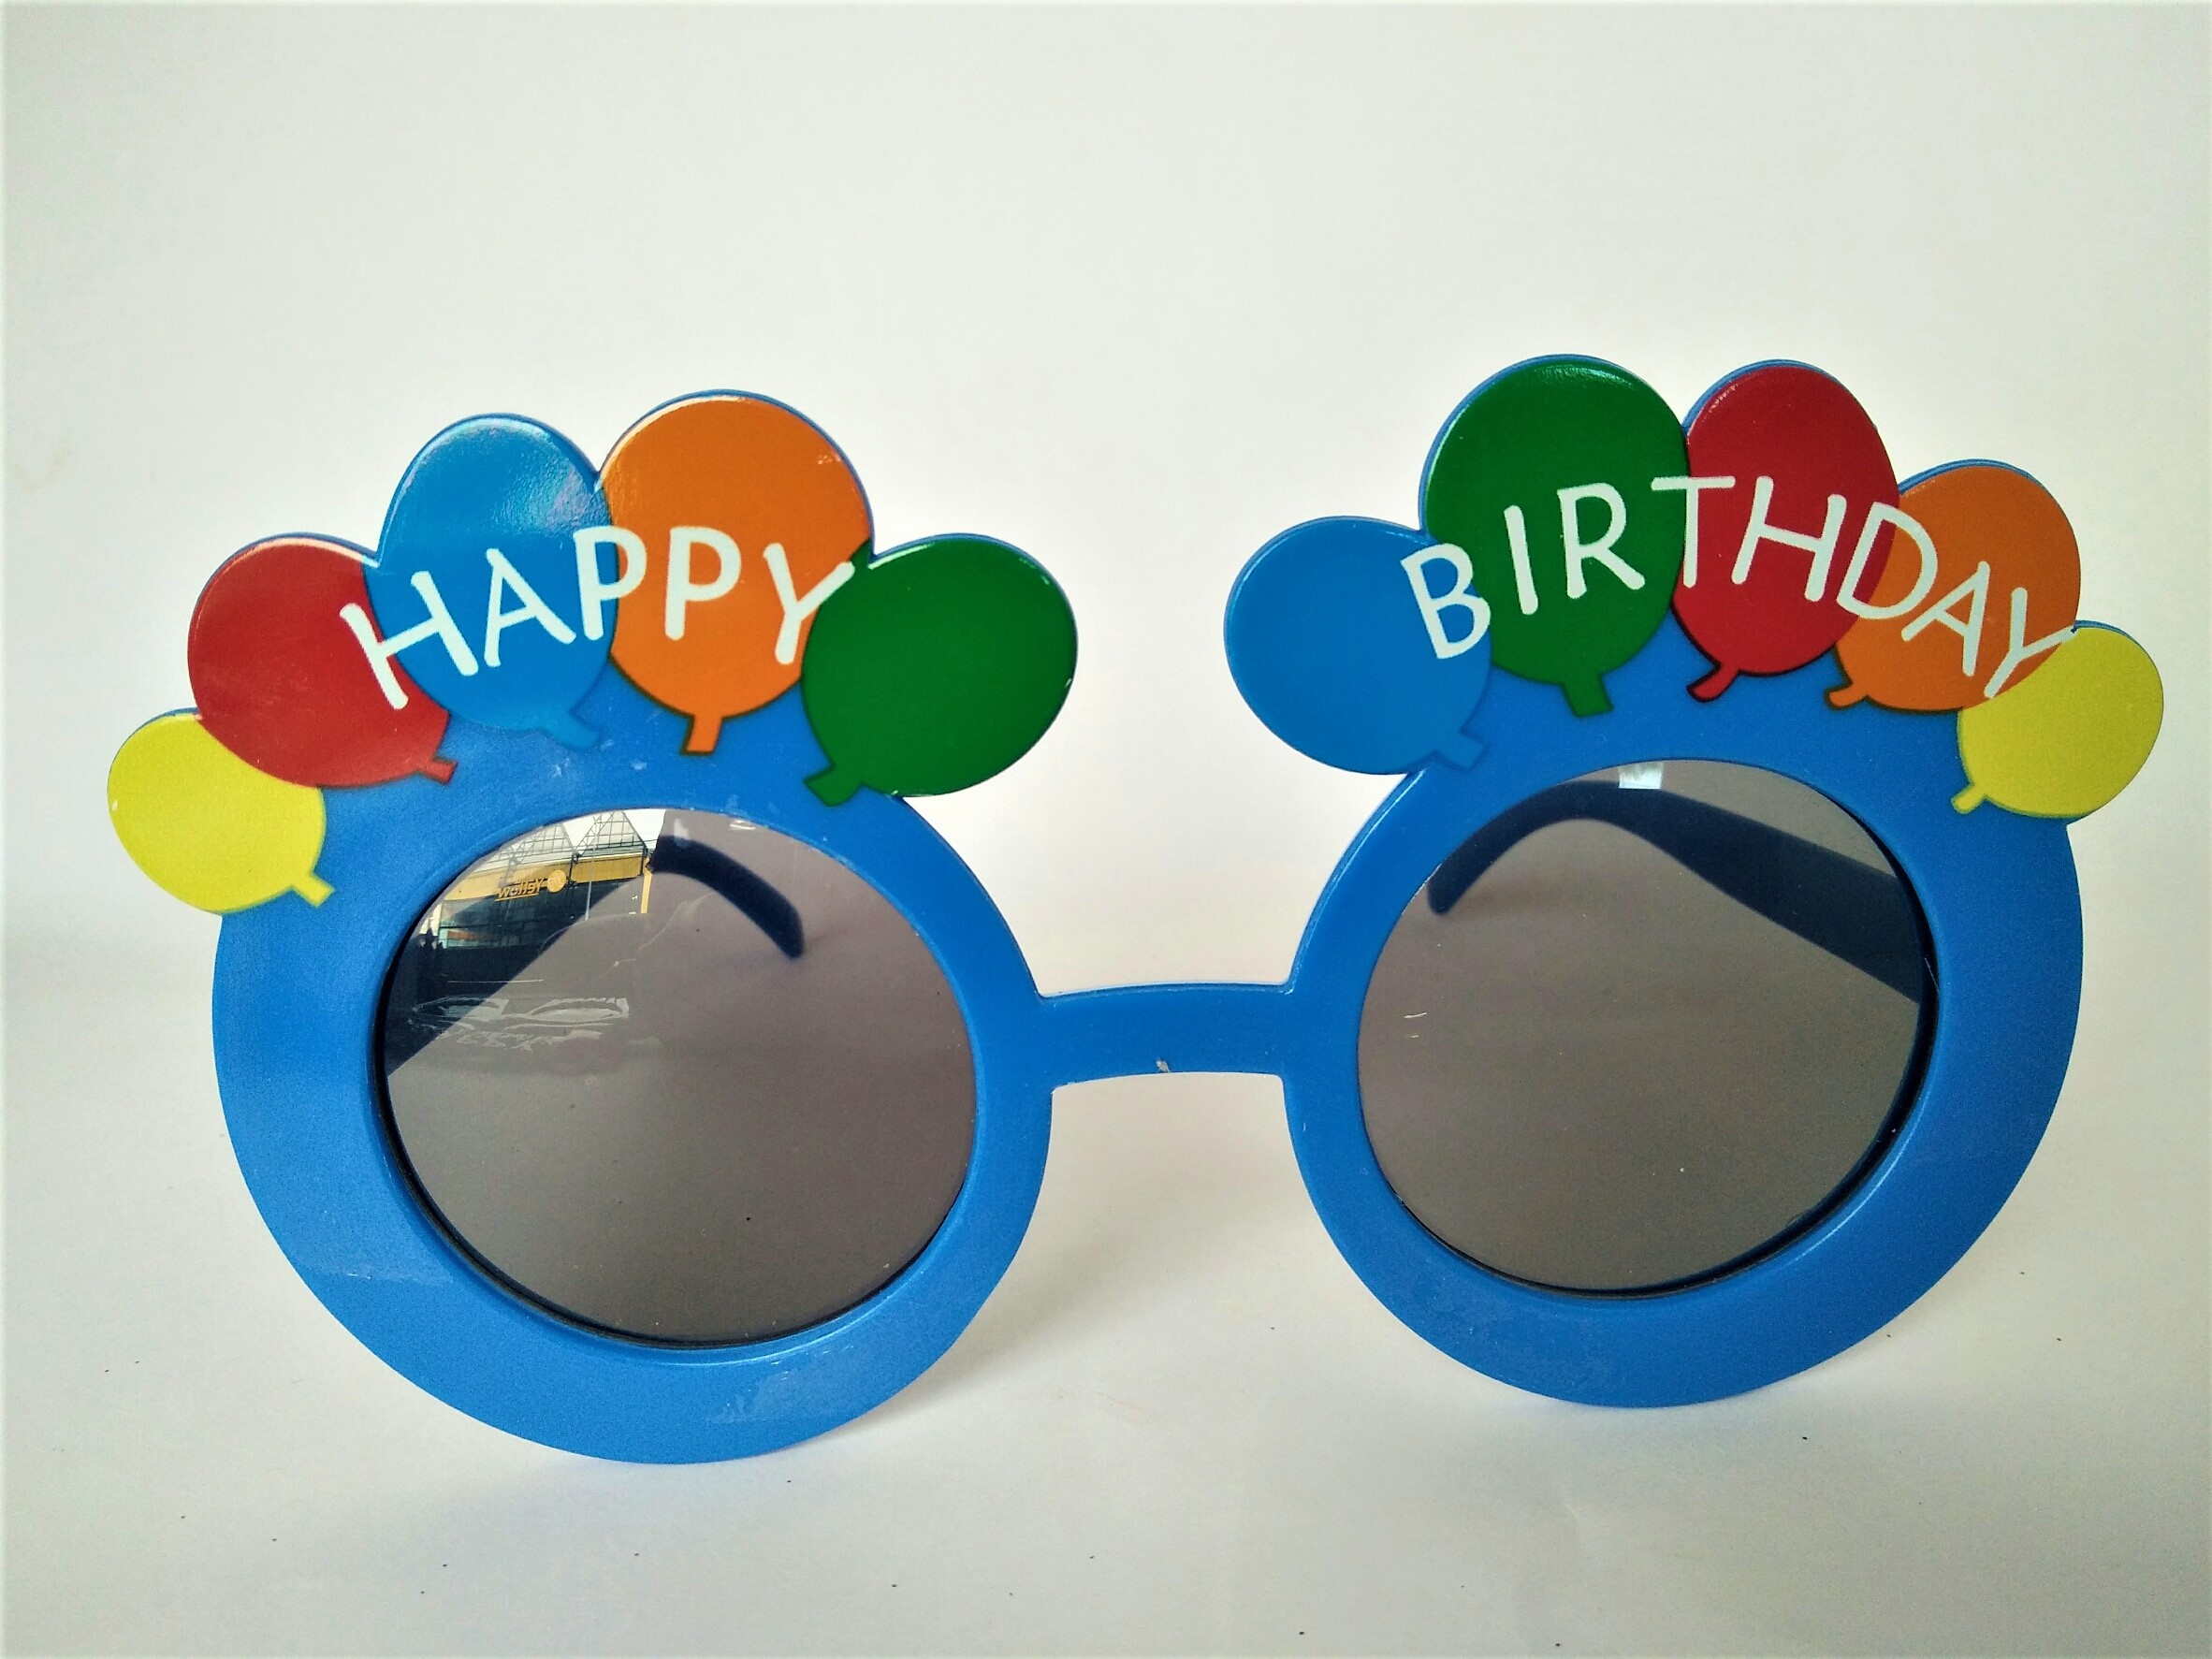 แว่น Happy Birthday ลายลูกโป่ง แว่นวันเกิด แว่น แว่นตา แฟนซี ปาร์ตี้ วันเกิด พร็อพวันเกิด Happy Birthday Fancy  Glasses